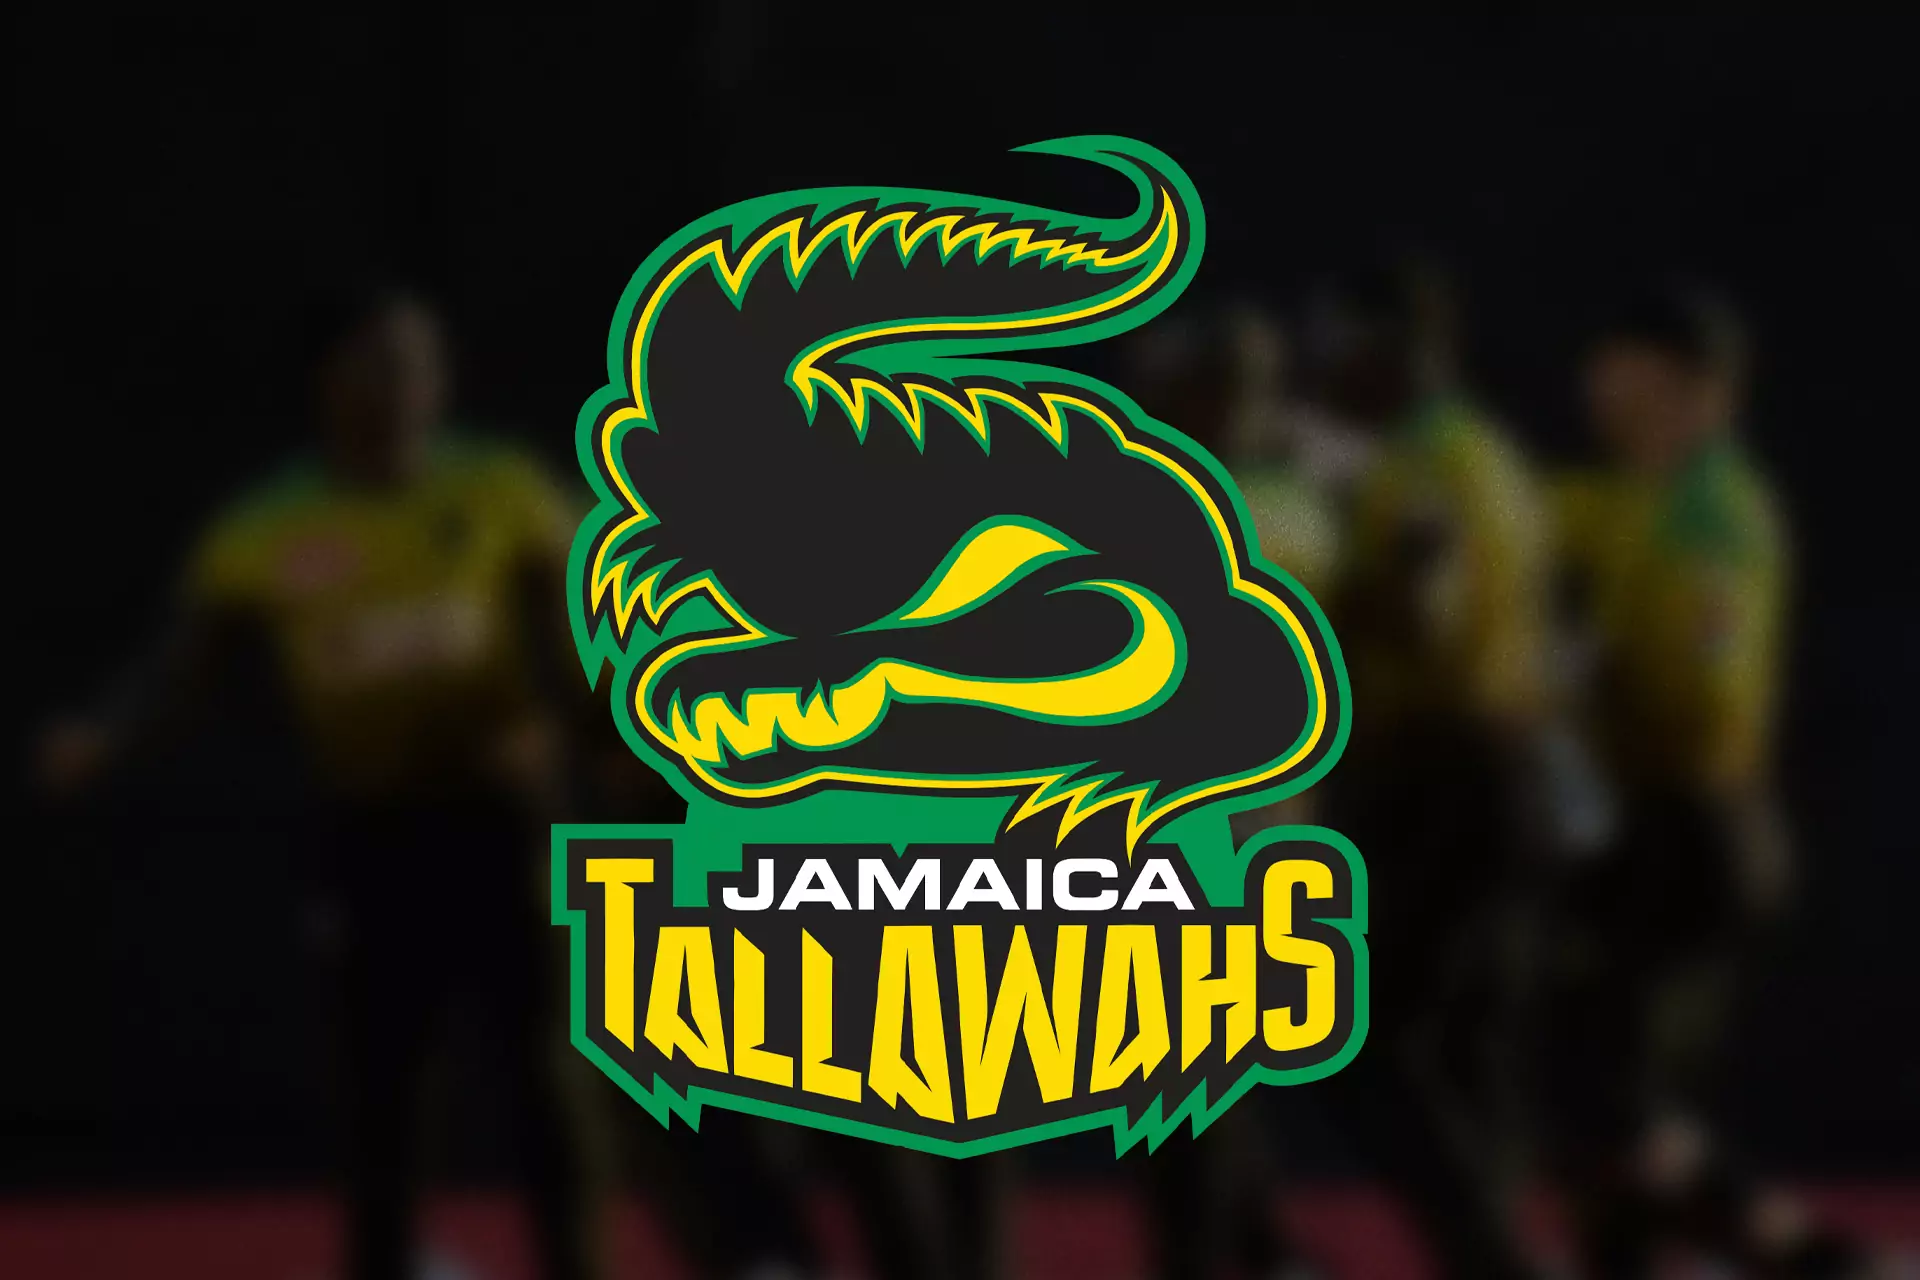 The Jamaica Tallawahs team represents Jamaica in the Caribbean Premier League.